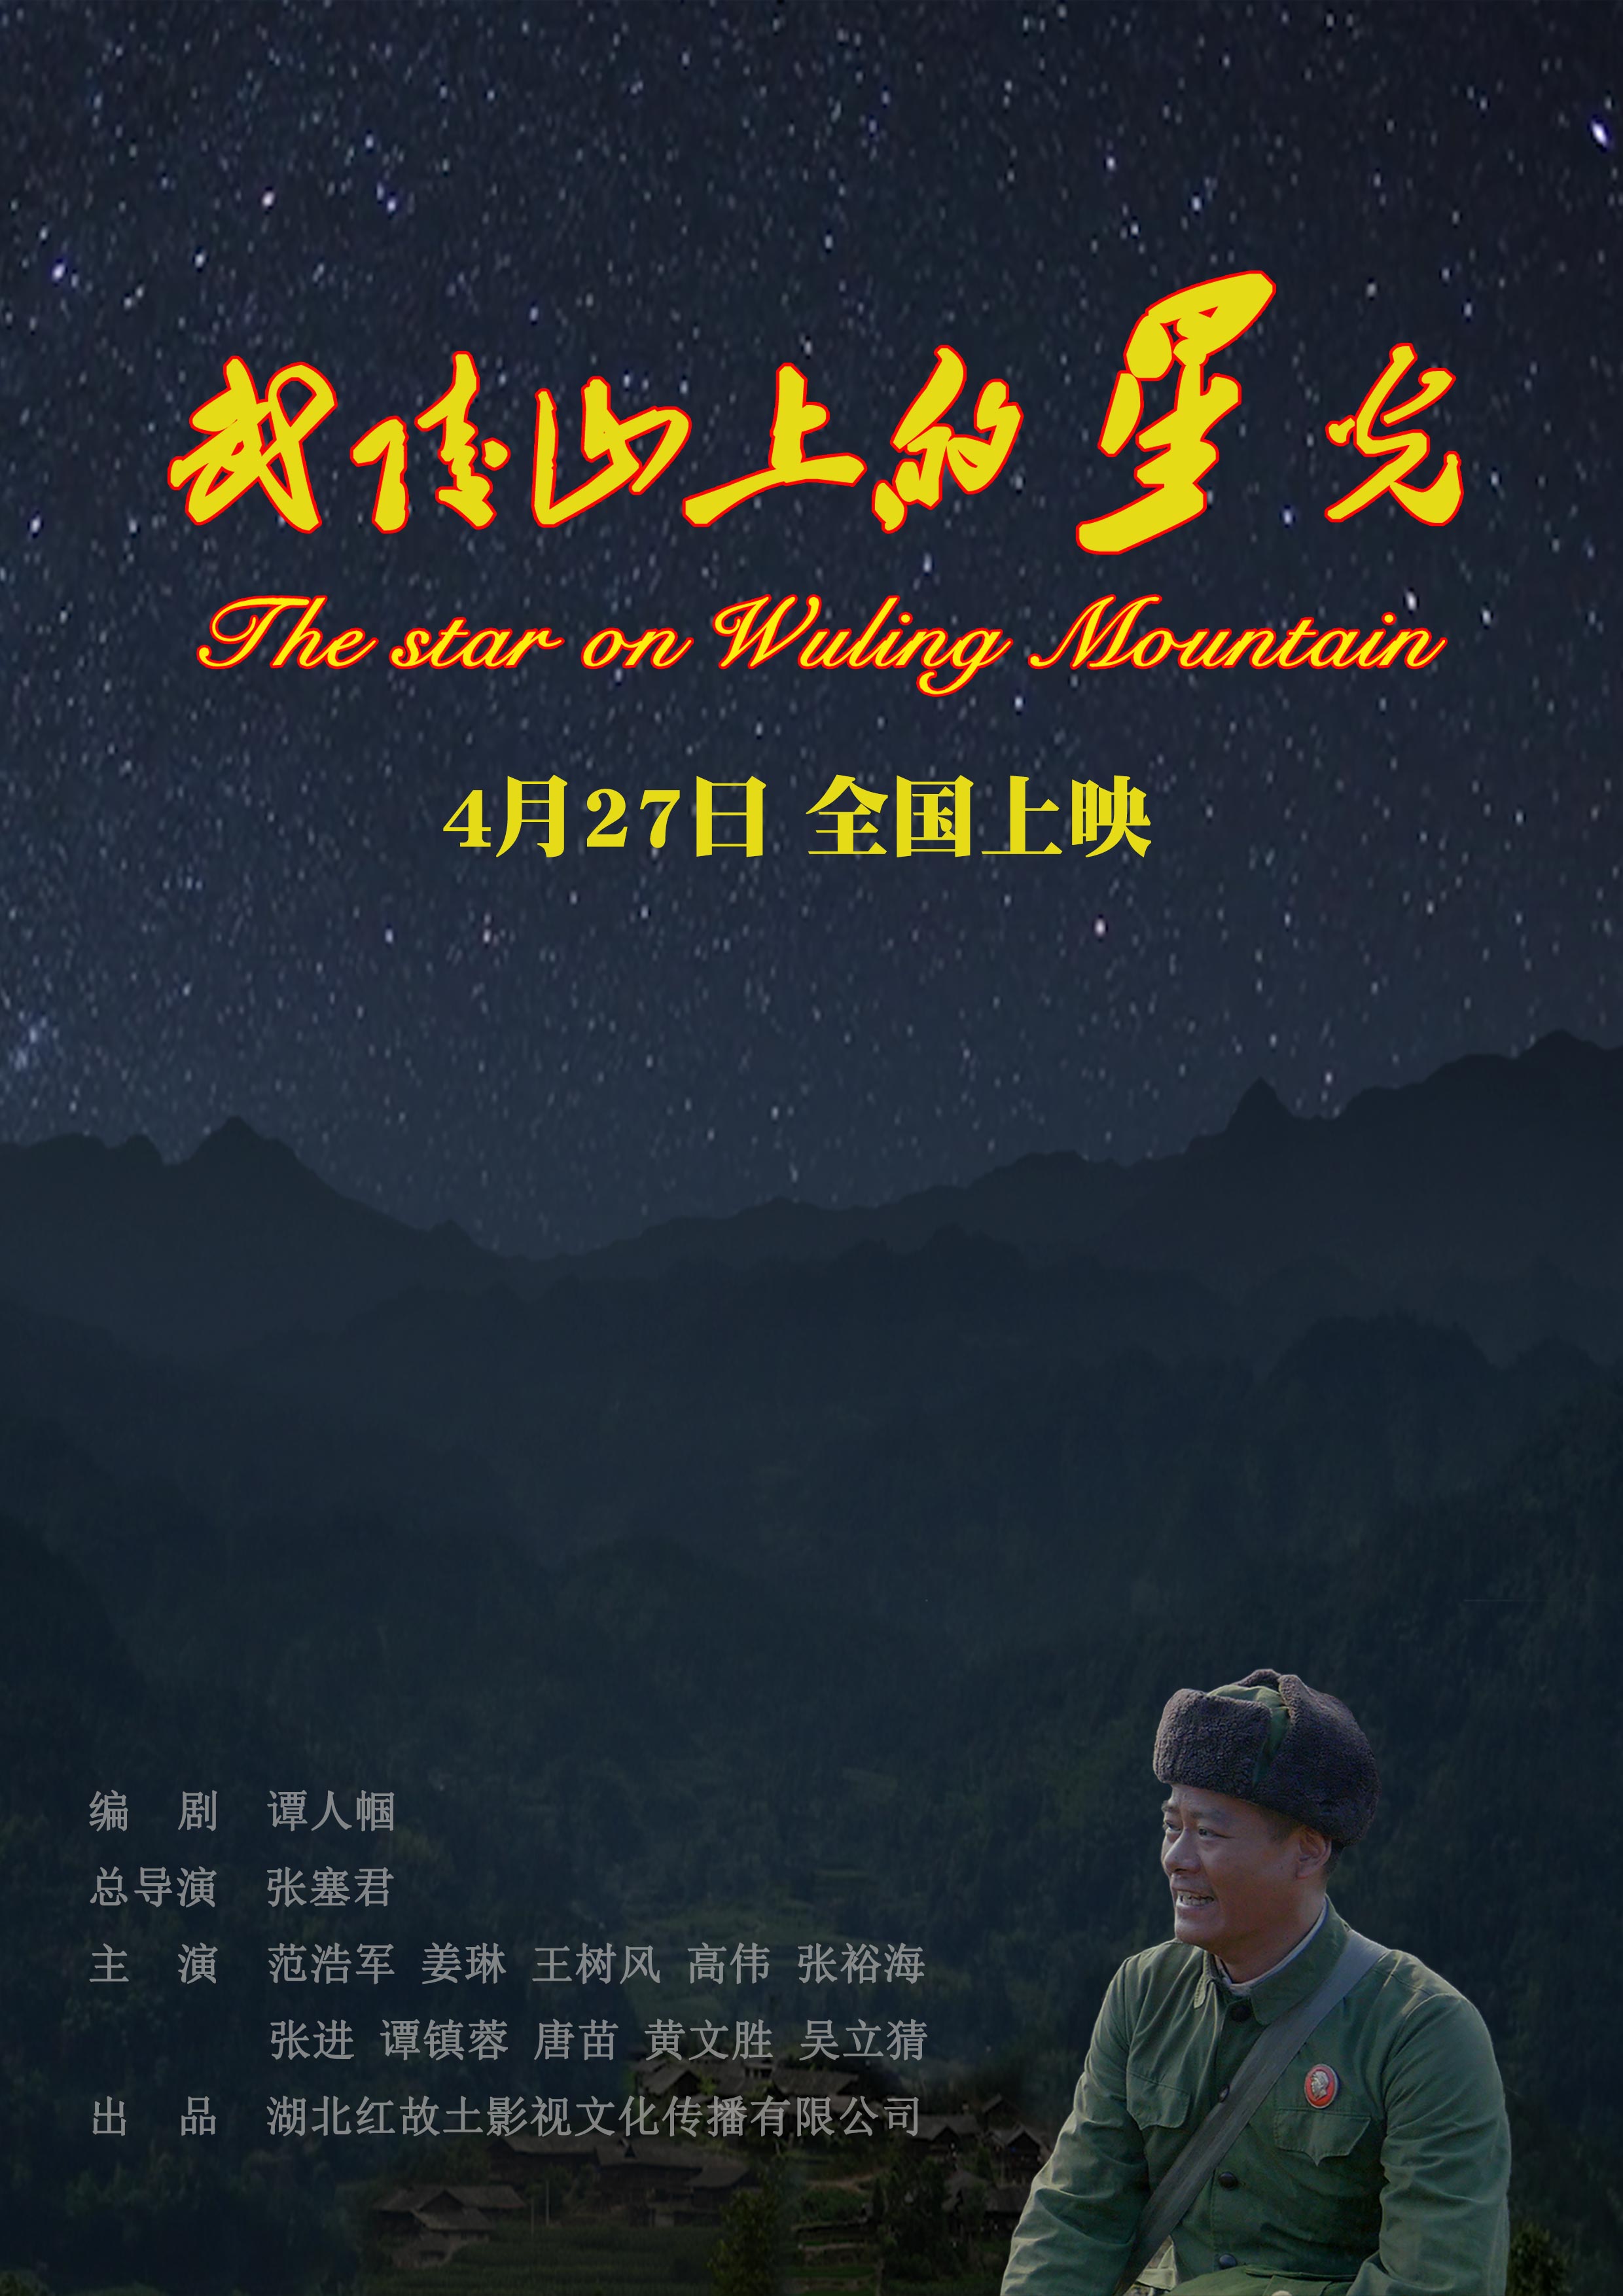 武陵山上的星光 - The star on wuling mountain